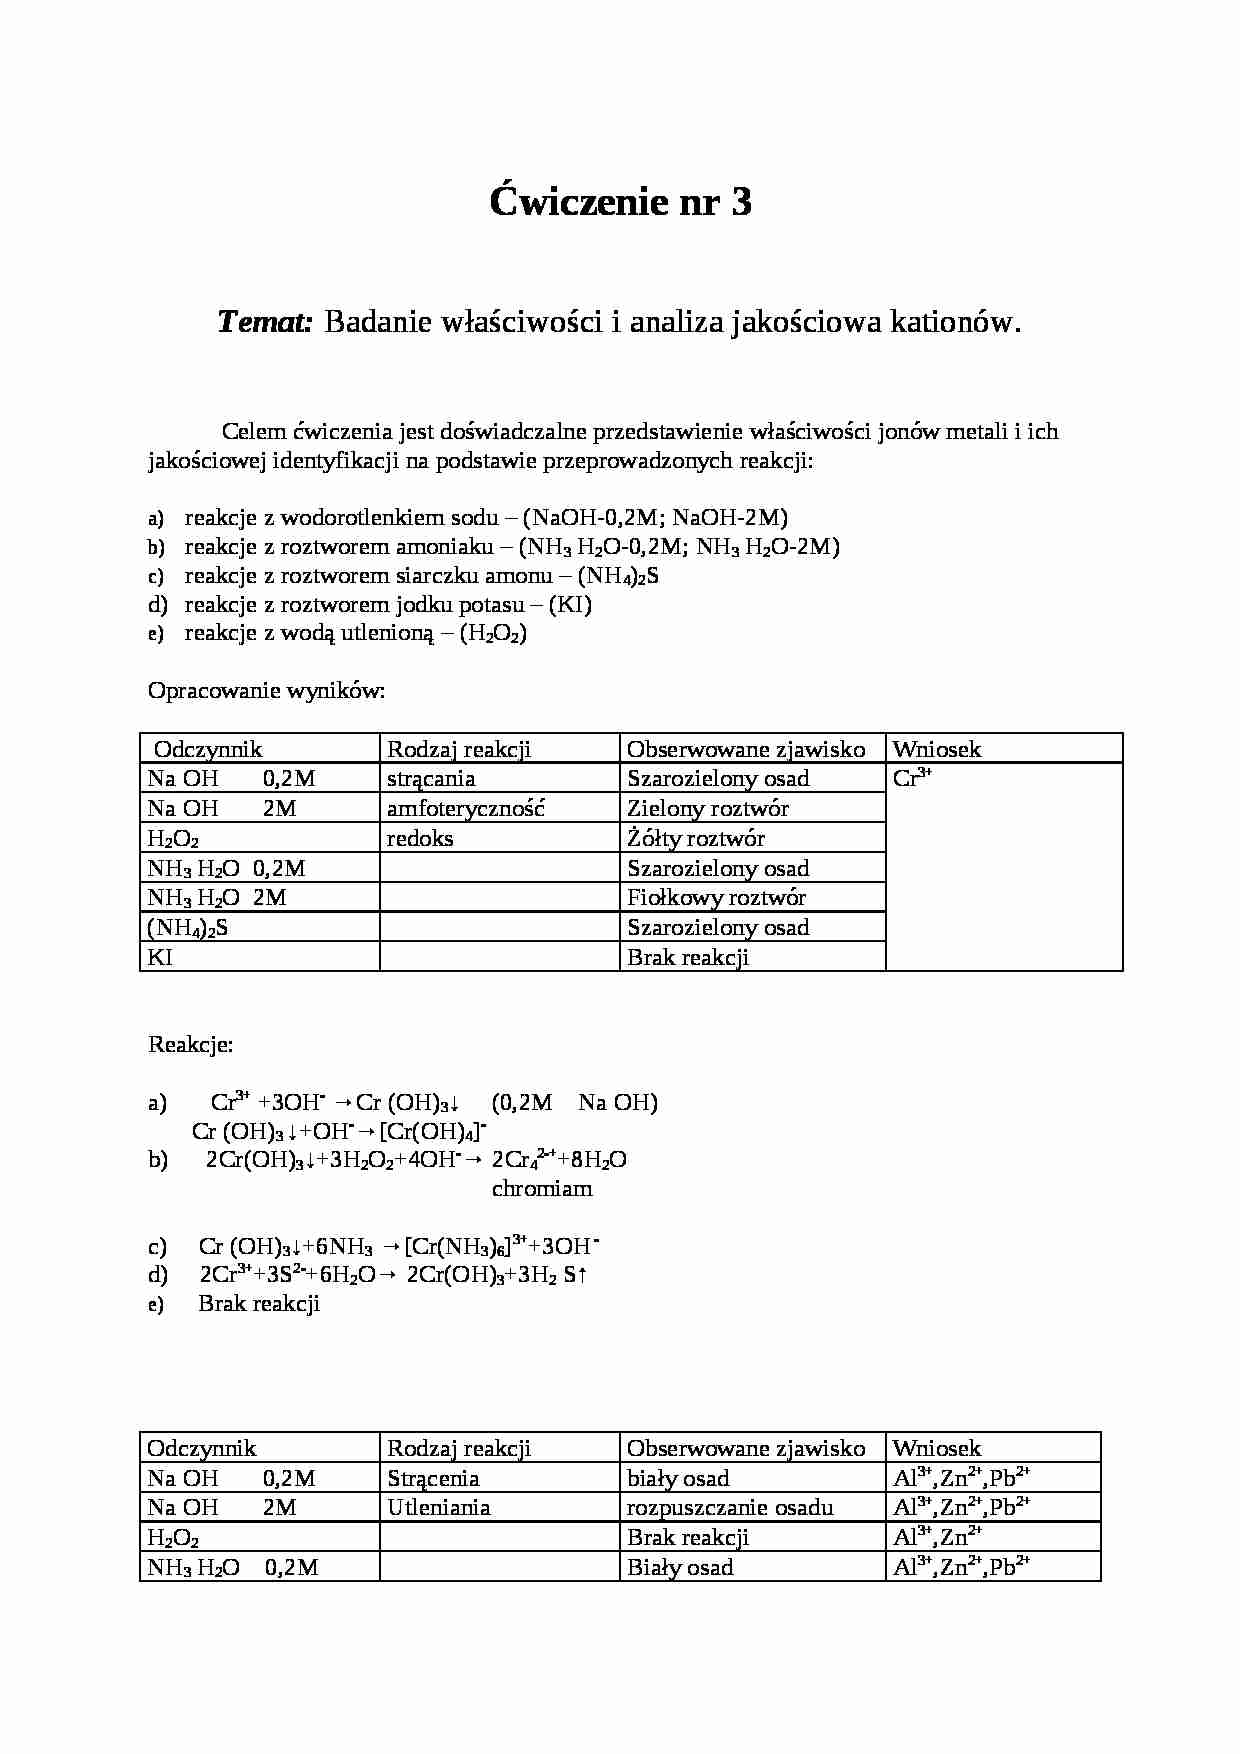 Badanie właściwości i analiza jakościowa kationów - strona 1